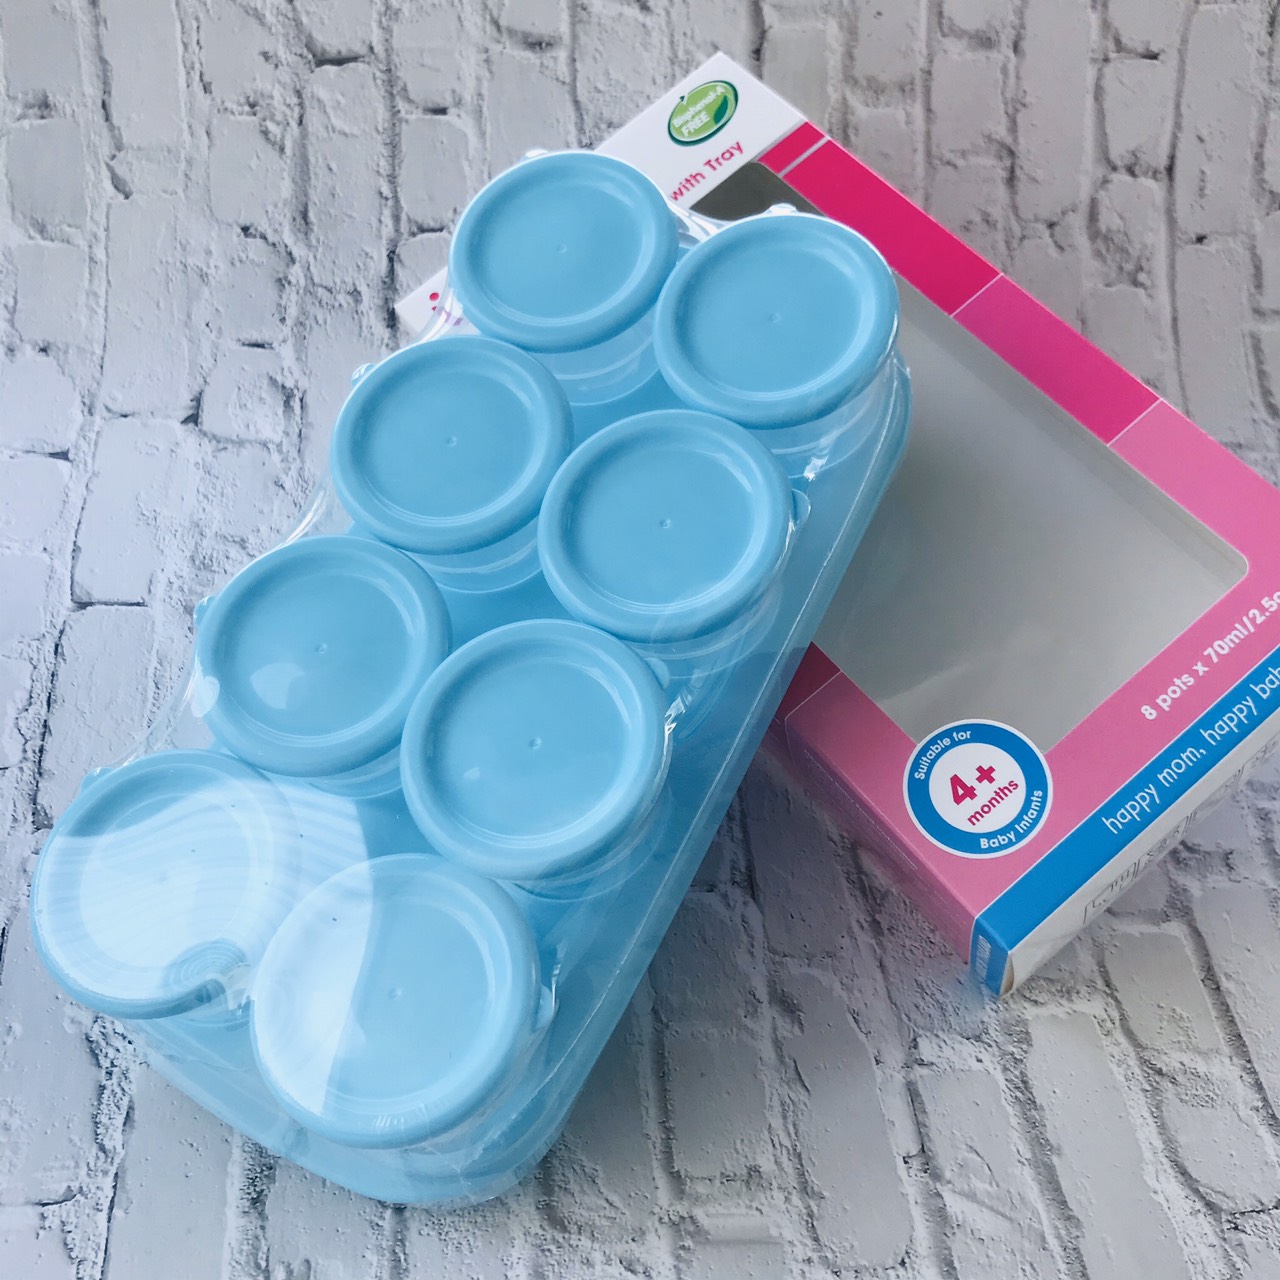 Bộ 8 Khay Trữ Đông Đồ Ăn Dặm Cho Bé UPASS UP0070N ( Màu Xanh) - Chất Liệu Nhựa Cao Cấp Không BPA An Toàn Cho Bé- Tặng Kèm 1 Túi Trữ Sữa UNIMOM